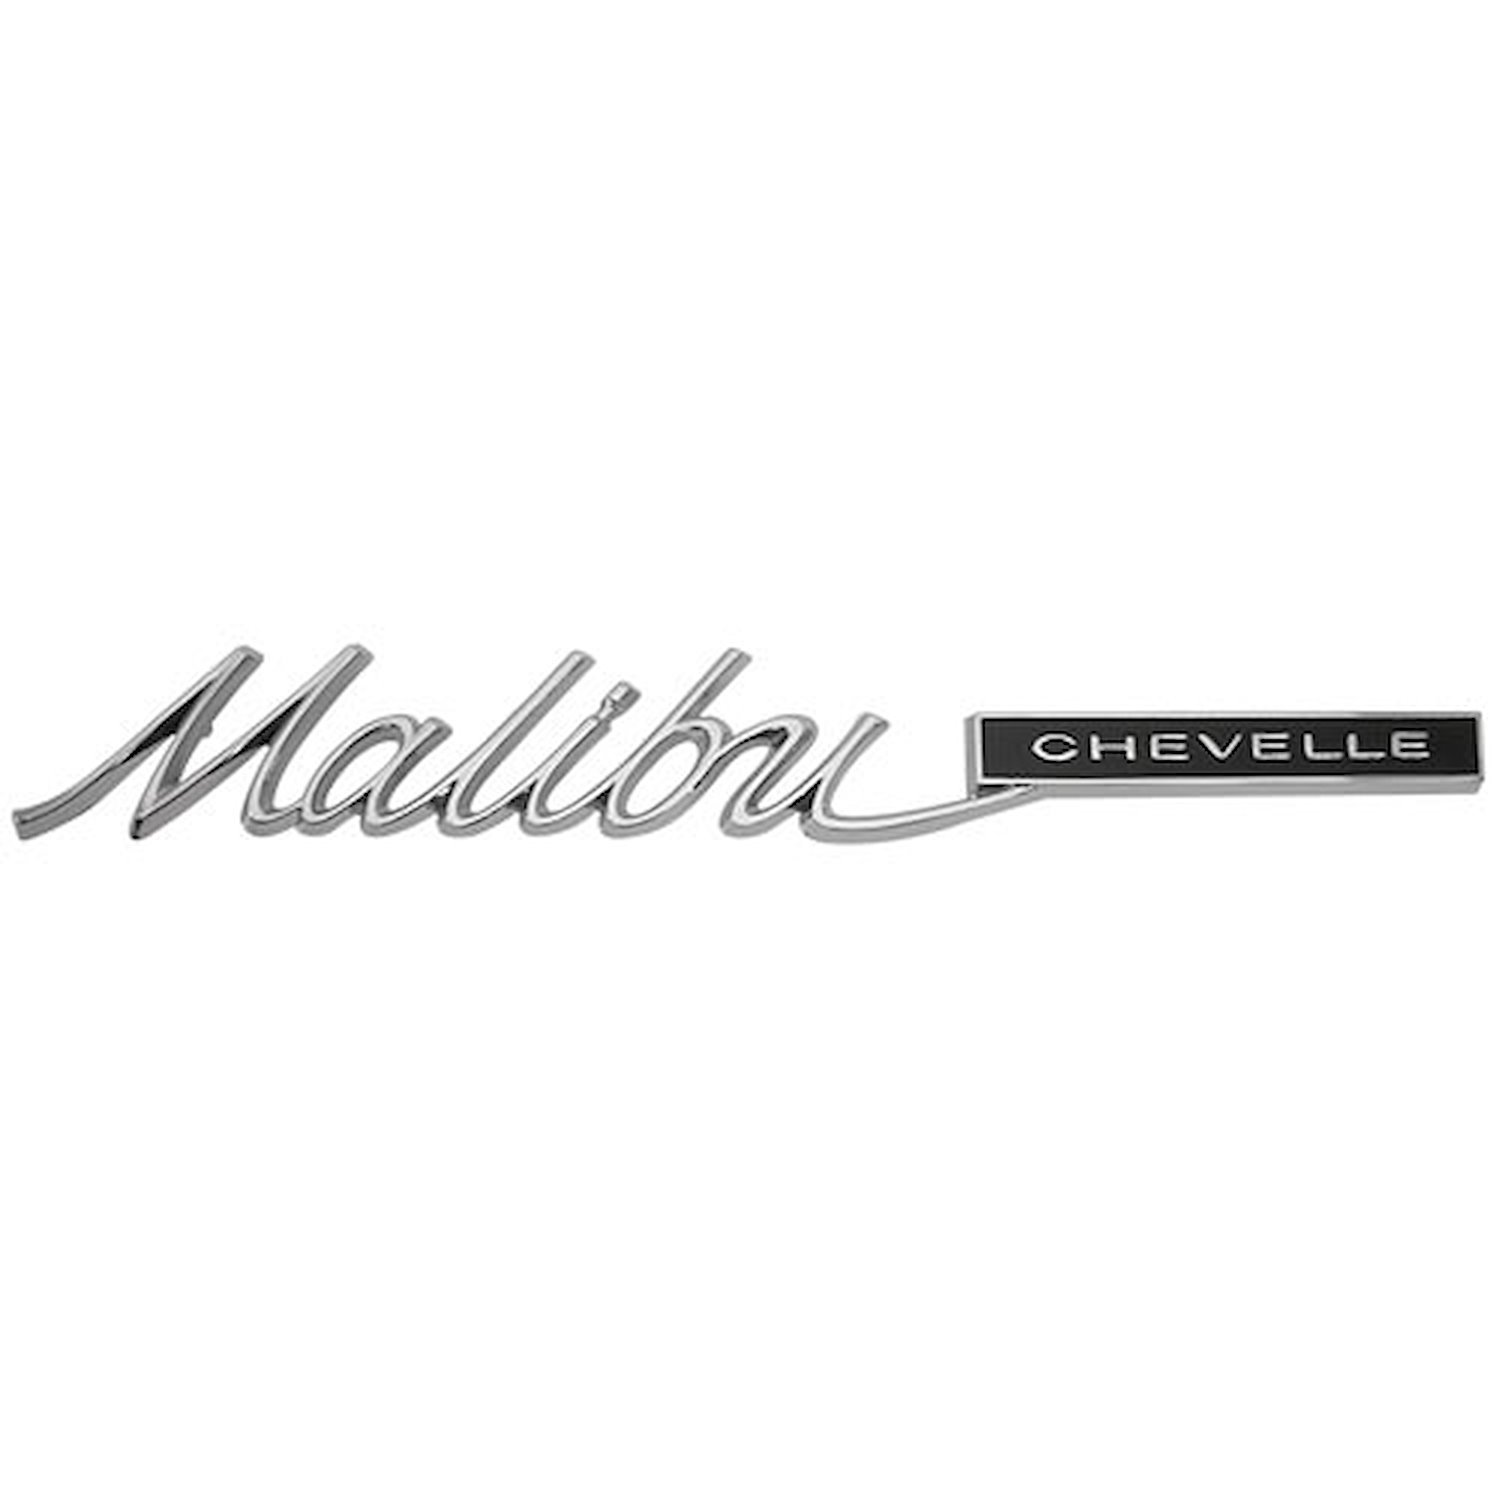 1965 Chevelle “Malibu Chevelle” Trim Parts 4211 Rear Quarter Emblem 